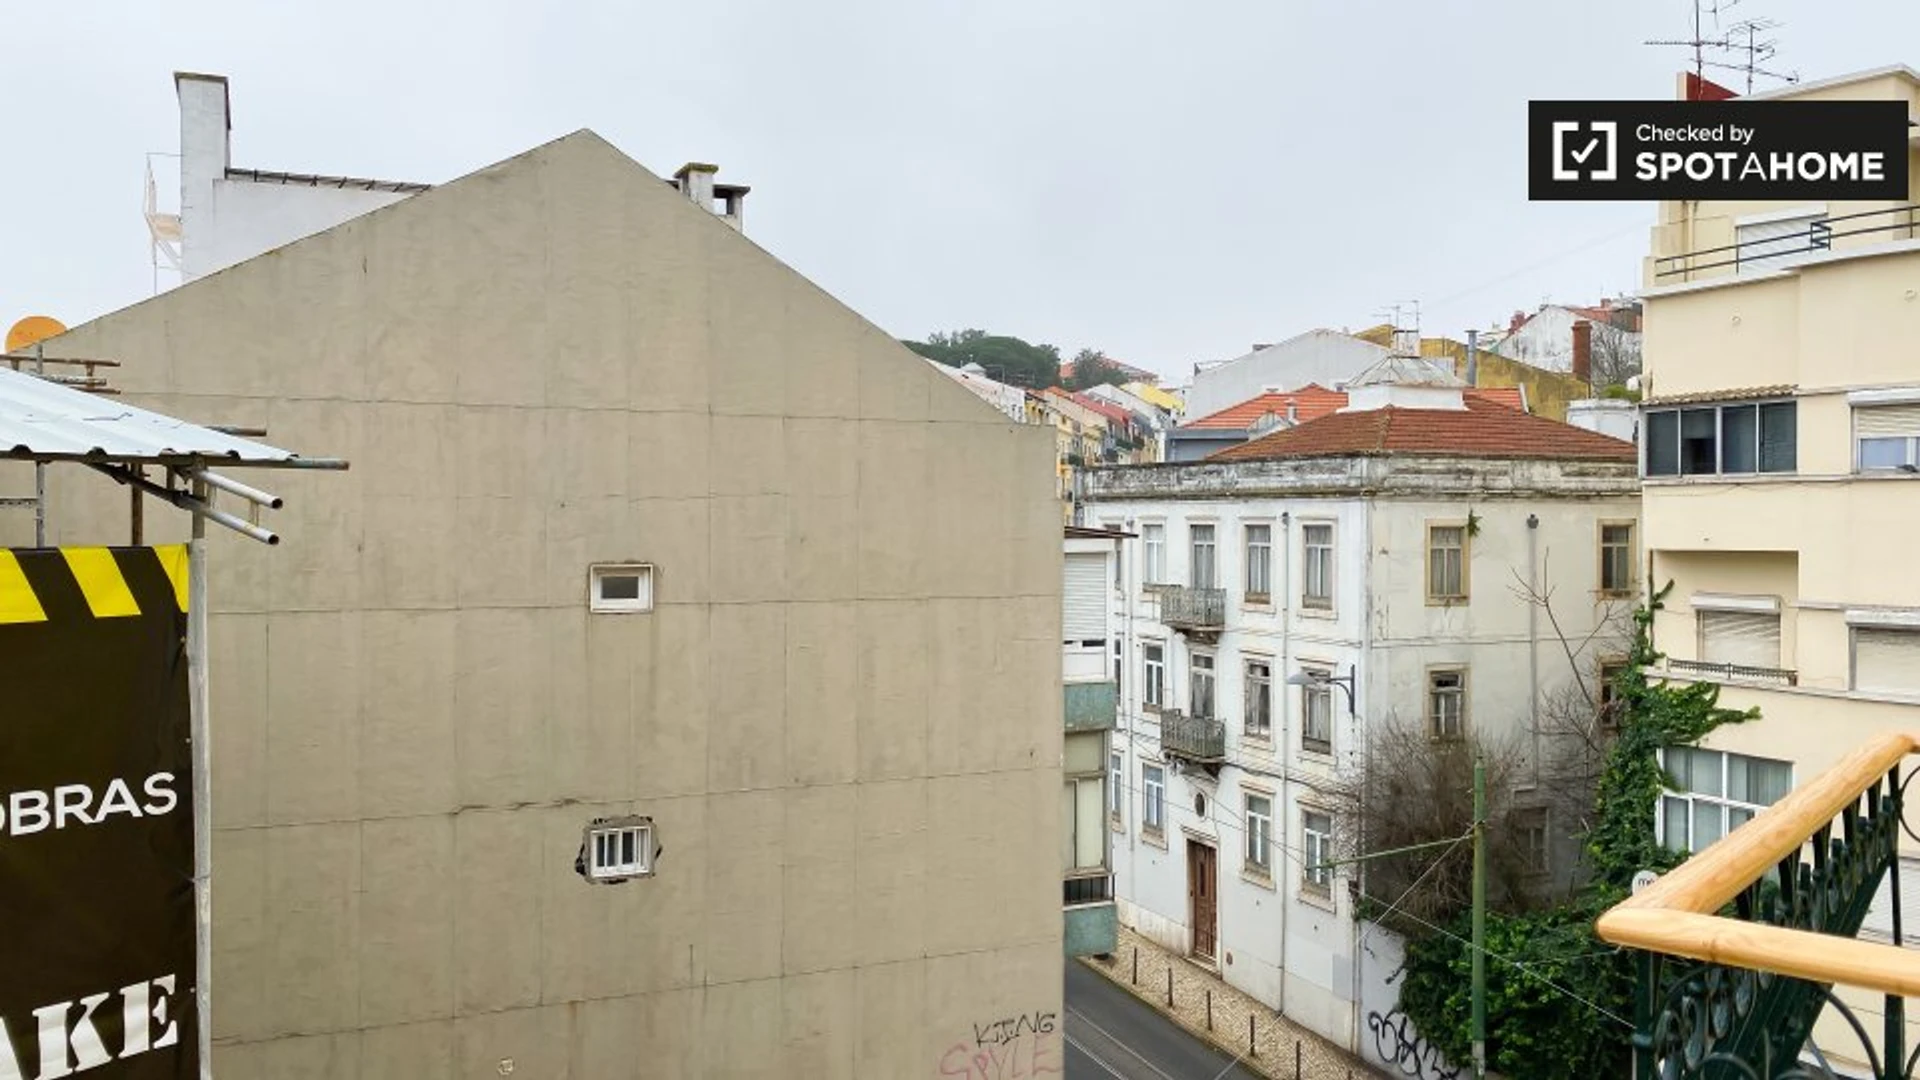 Stanza privata con letto matrimoniale Lisbona